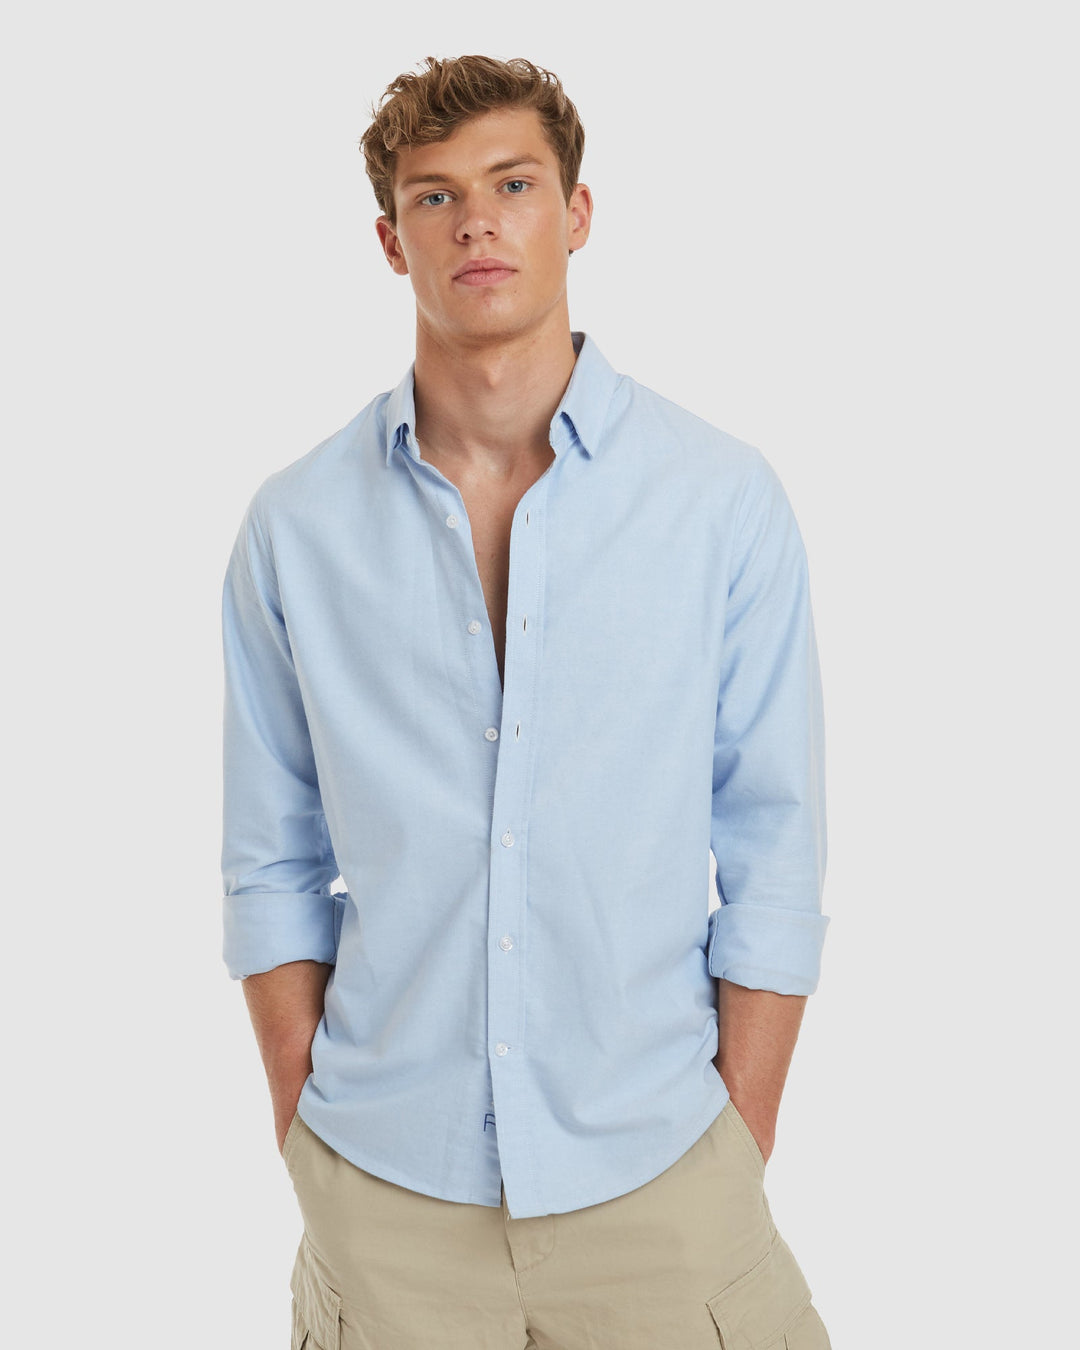 Oxford Blue Cotton Shirt  - Slim Fit